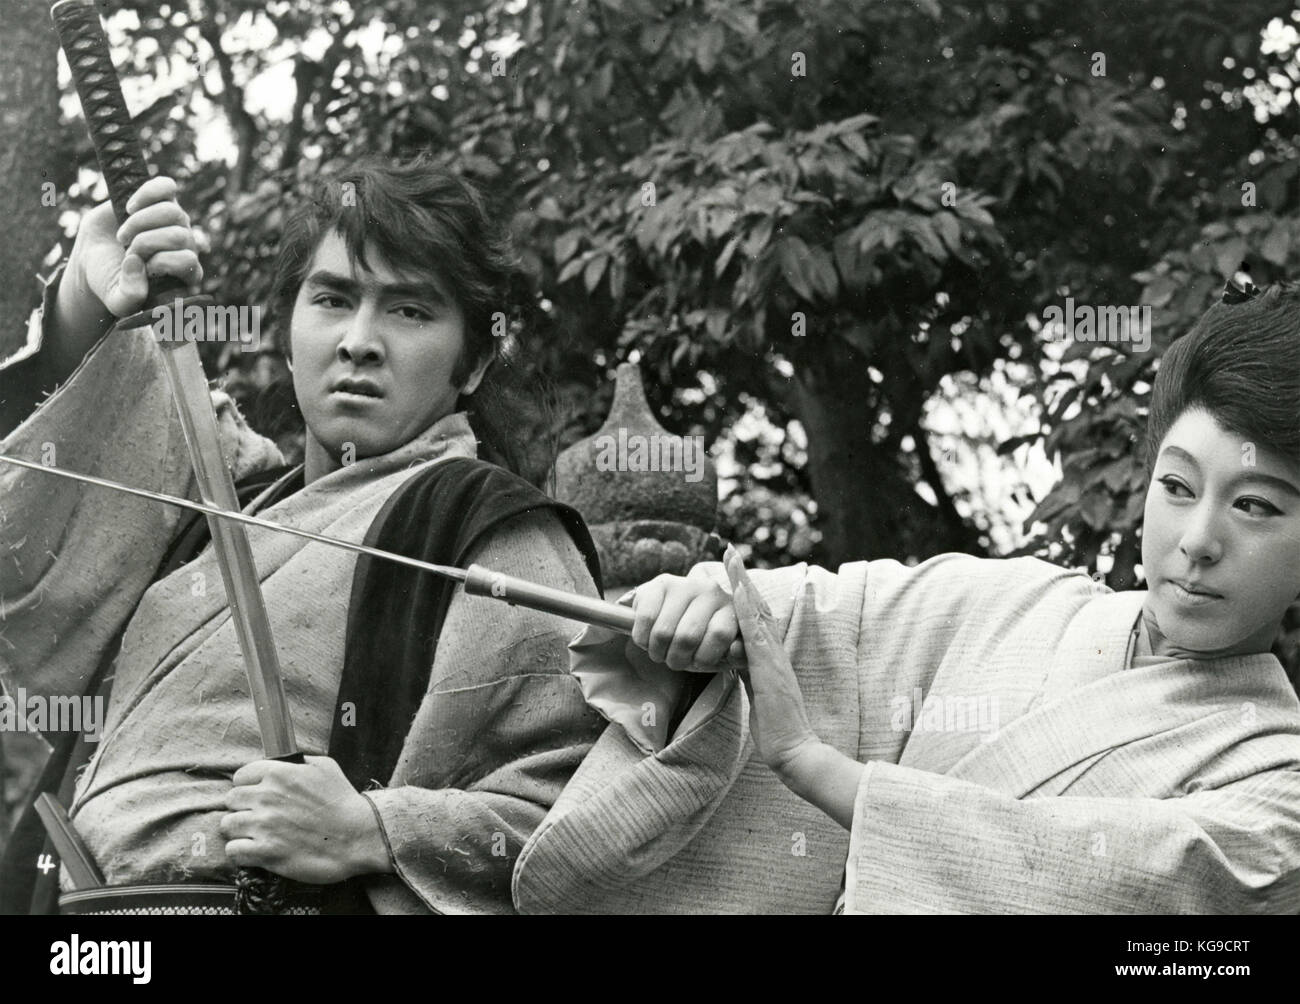 Film non identifié chinois des années 60 Banque D'Images